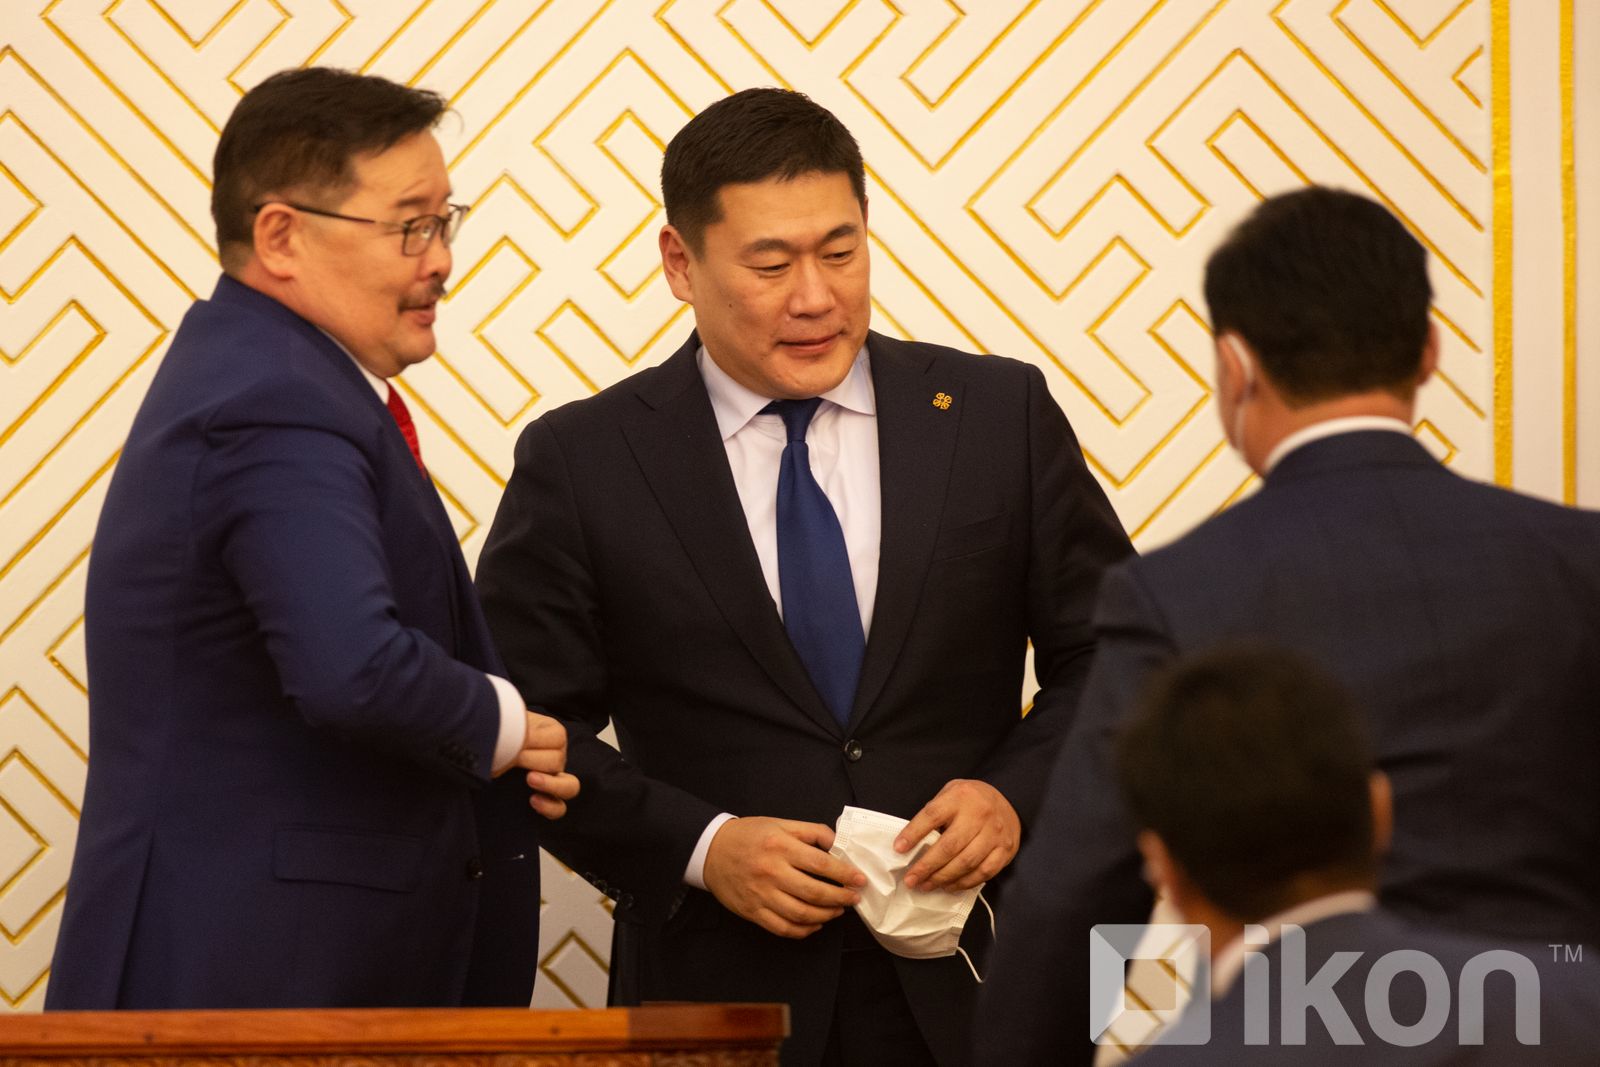 L.Oyun-Erdene 총리는 국가안전보장회의 A.Gansukh 사무총장을 정직시킬 것을 제안.jpg